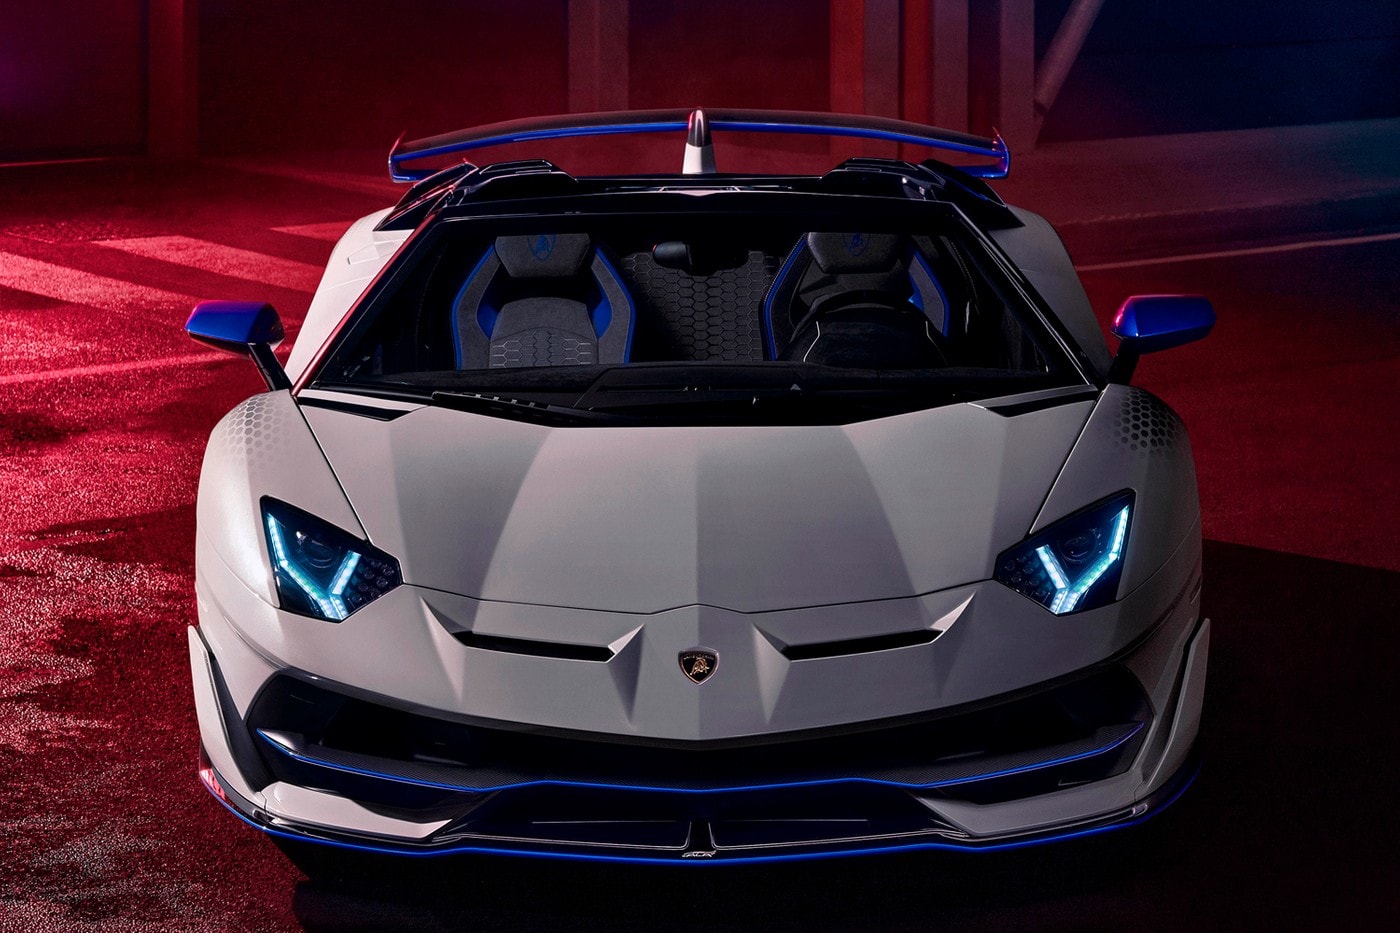 2021 年樣式 Lamborghini Aventador Roadster SVJ Xago Edition 車款發佈